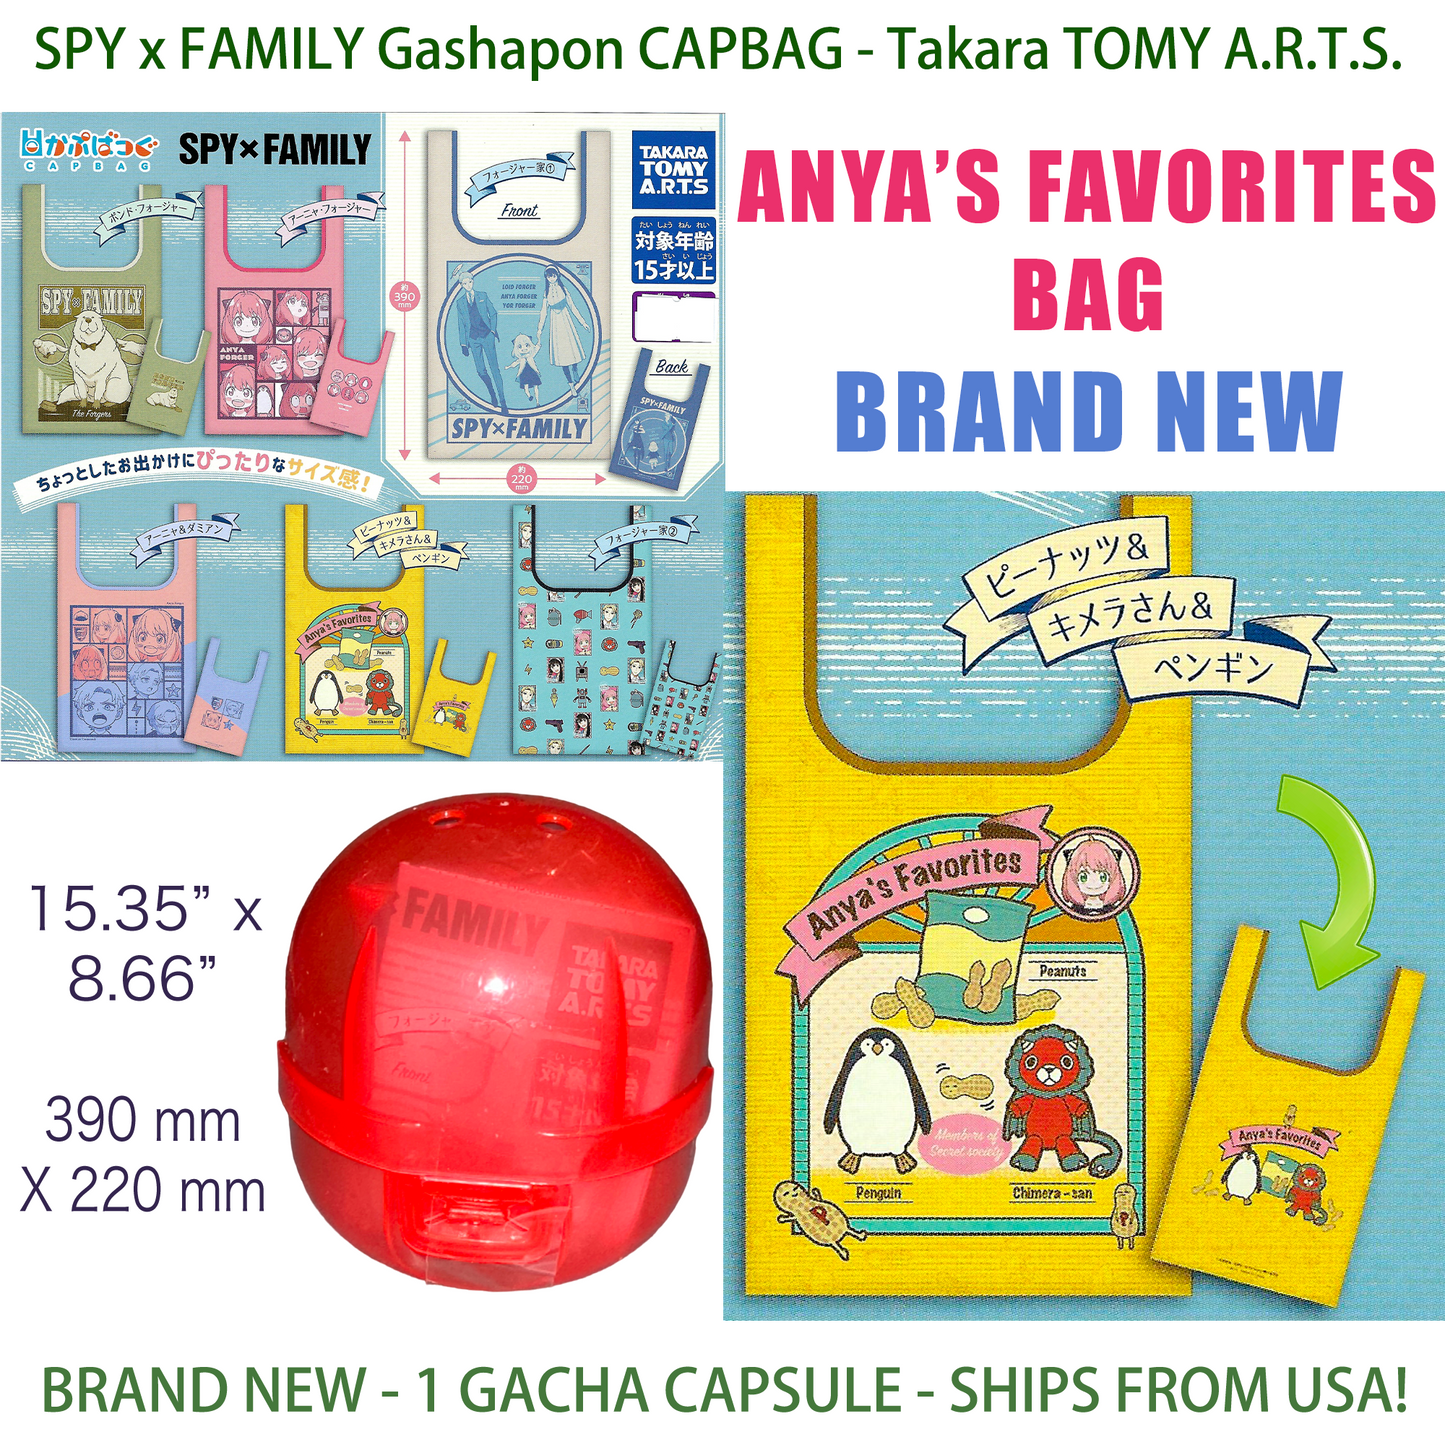 ANYA'S FAVORITES - SPY x FAMILY CAPBAG - SPYxFAMILY Gashapon TAKARA TOMY (NEW)